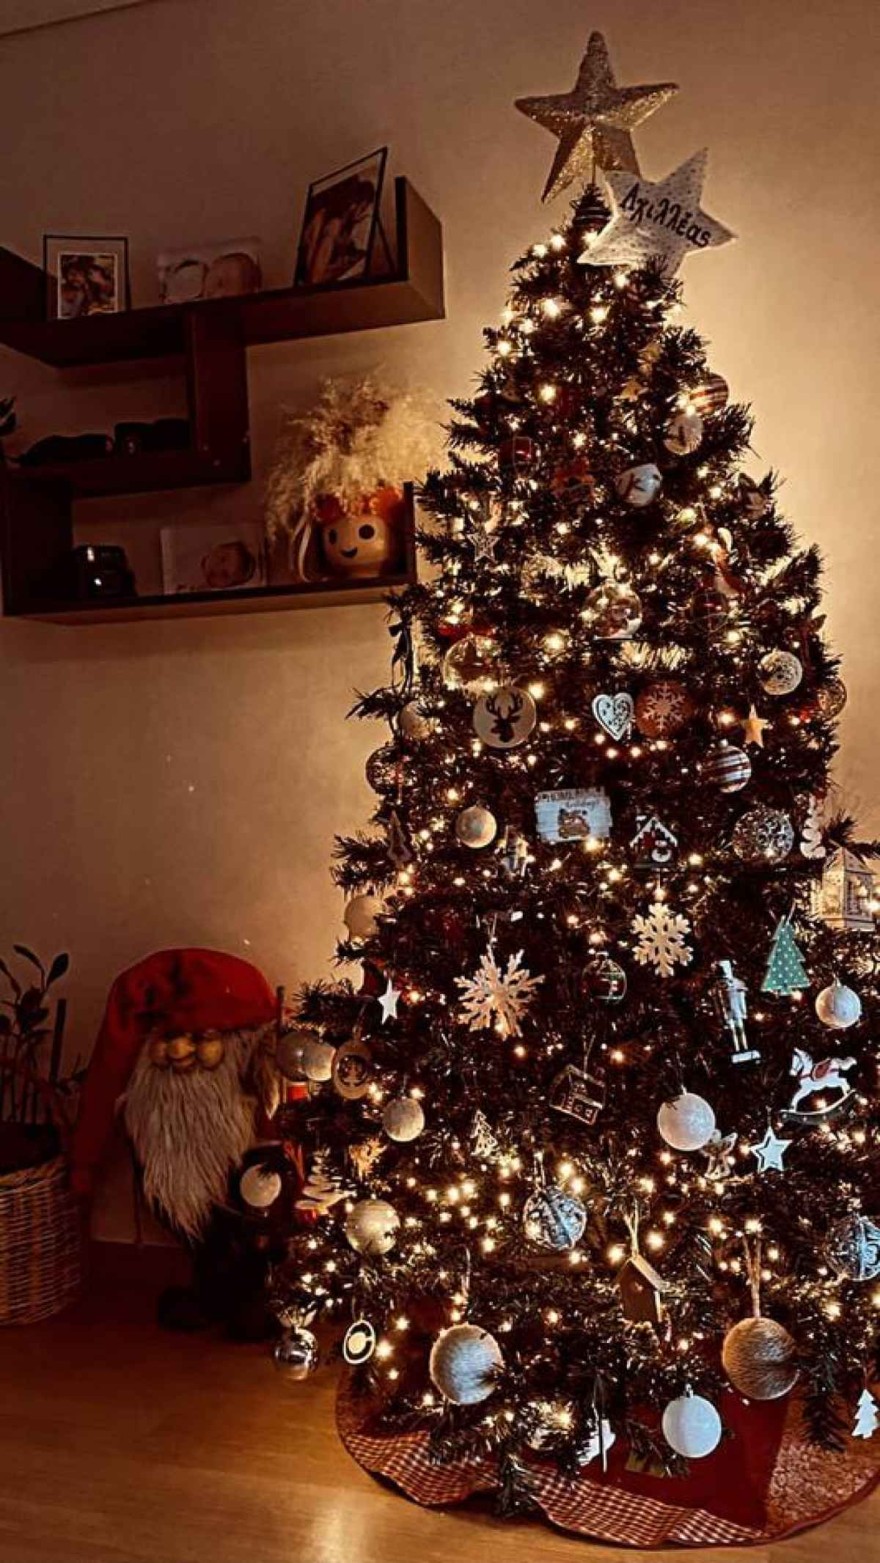 Χριστουγεννιάτικο δέντρο Πετρετζίκη Παπαμιχαήλ